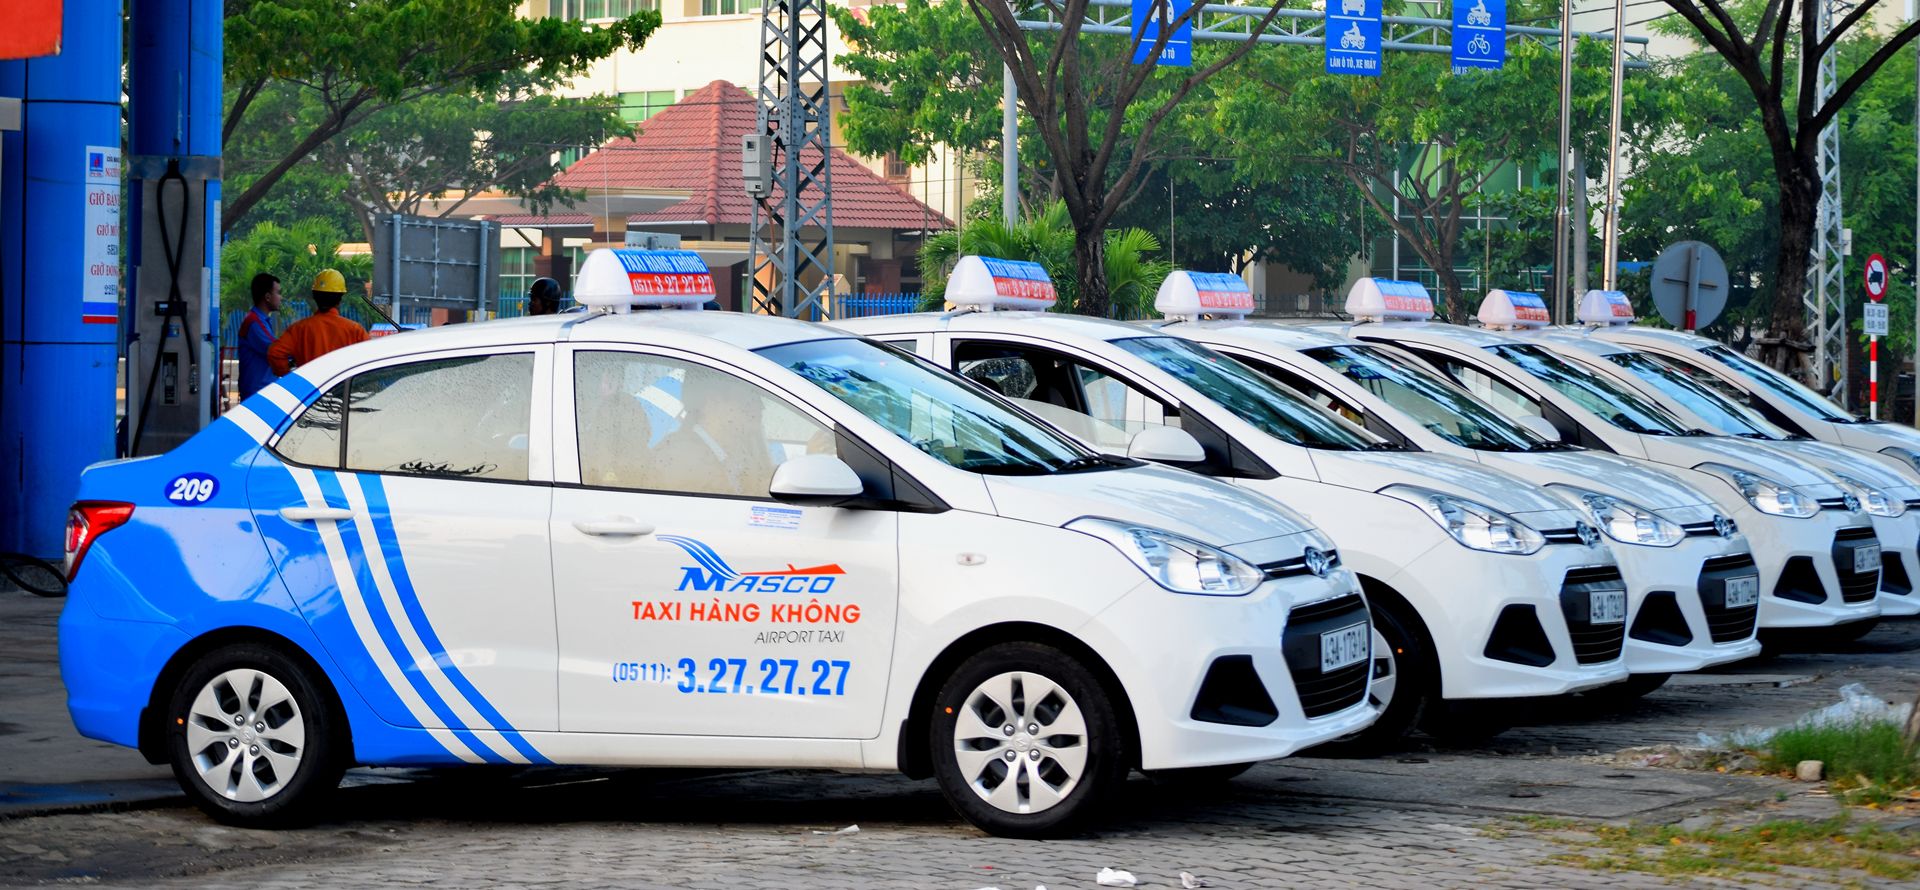 Taxi di chuyển từ sân bay Đà Nẵng về trung tâm thành phố